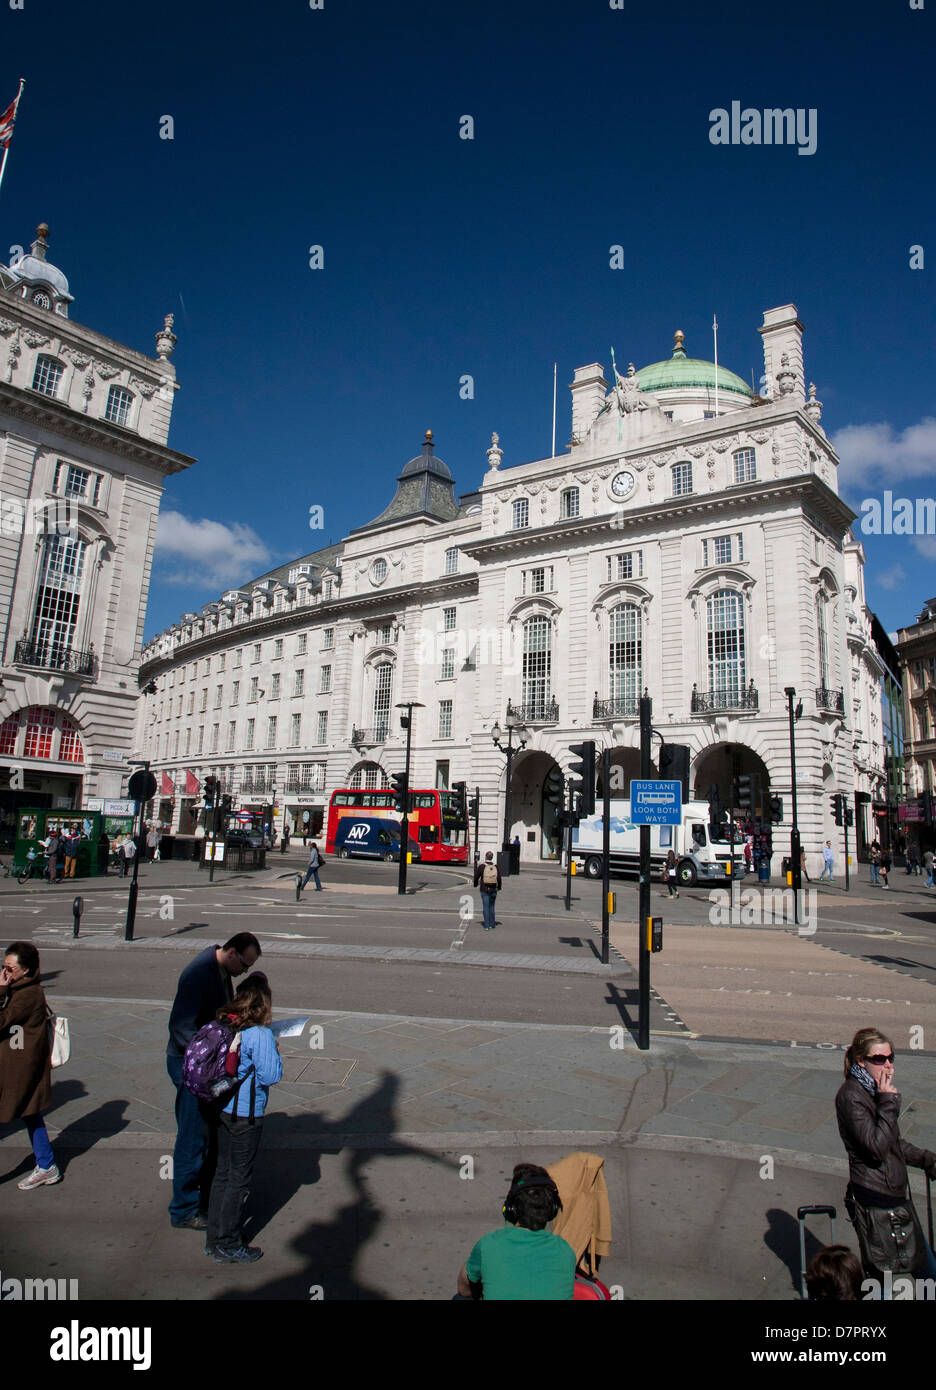 Avis de Piccadilly Circus montrant Café Royal, West End, Londres, Angleterre, Royaume-Uni Banque D'Images